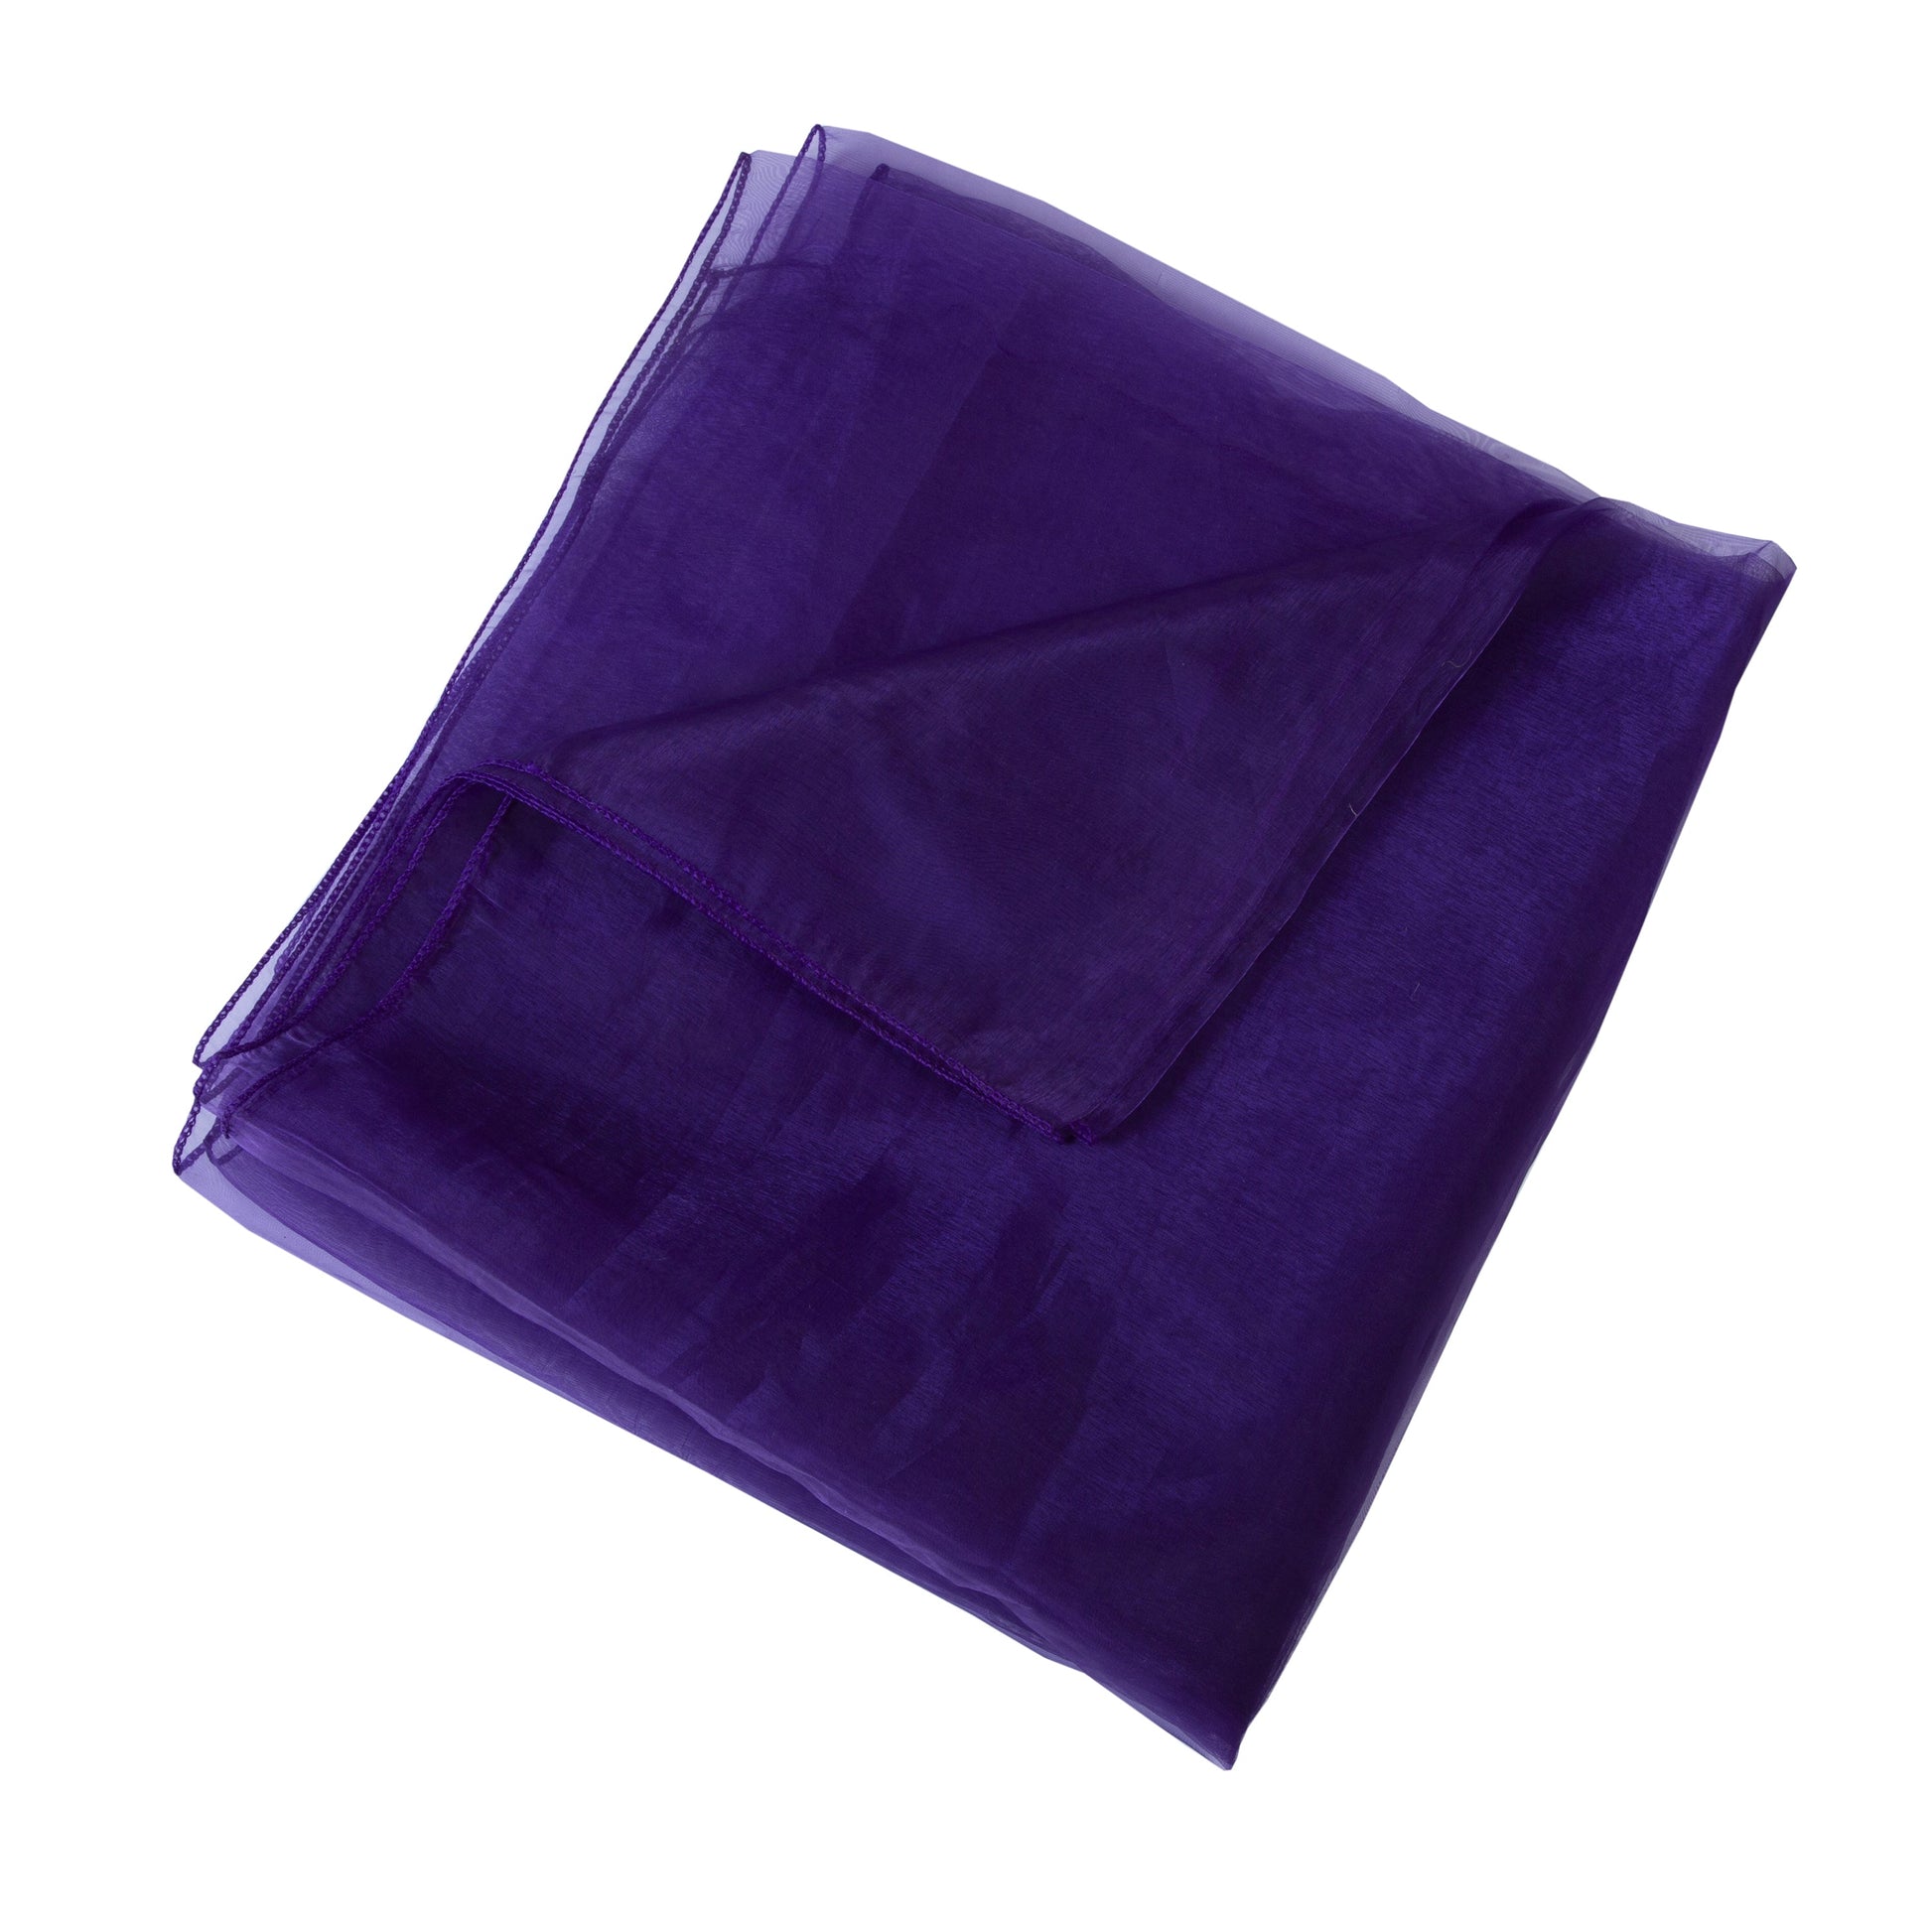 Cadbury Purple,3daac585-47ad-4812-aab5-692baecddceb